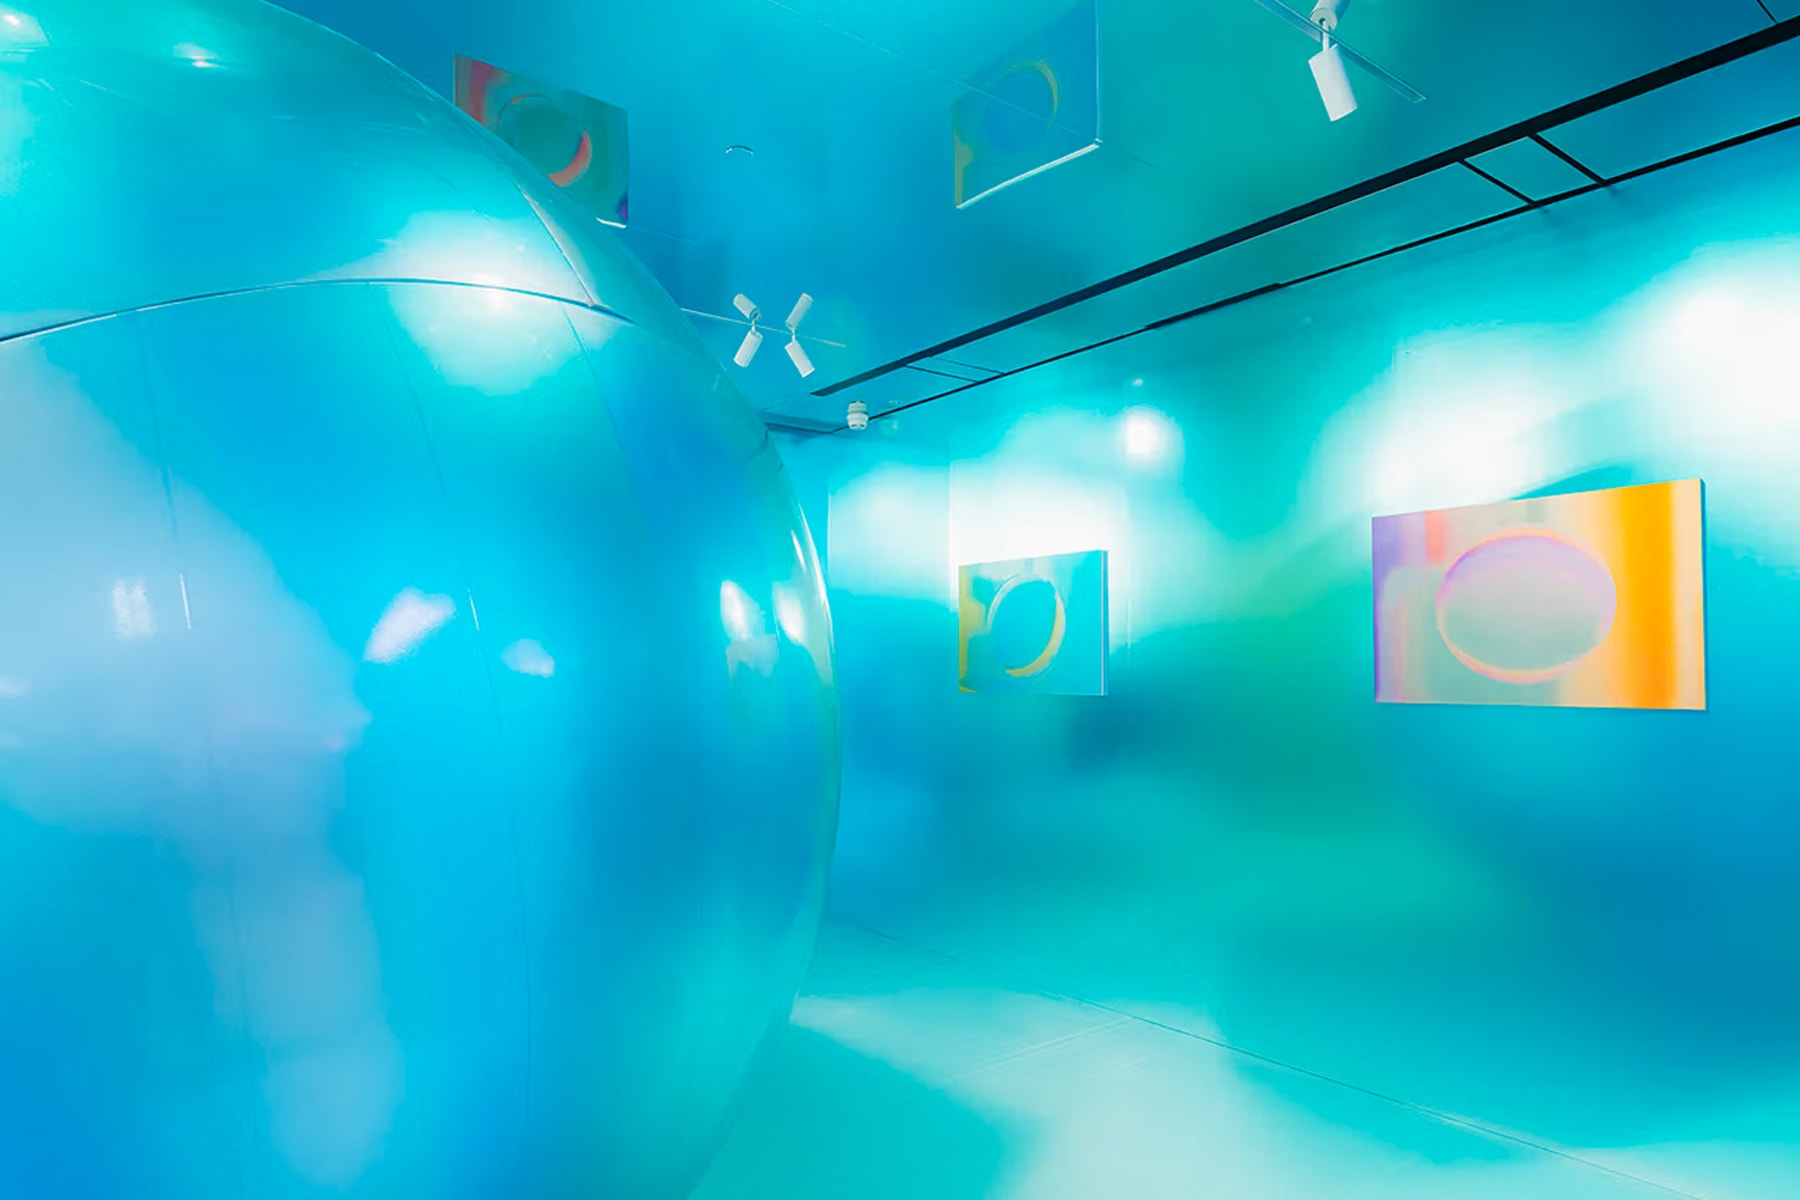 日本當代藝術家 YOSHIROTTEN 最新裝置展覽《MOON LANDING》正式登場